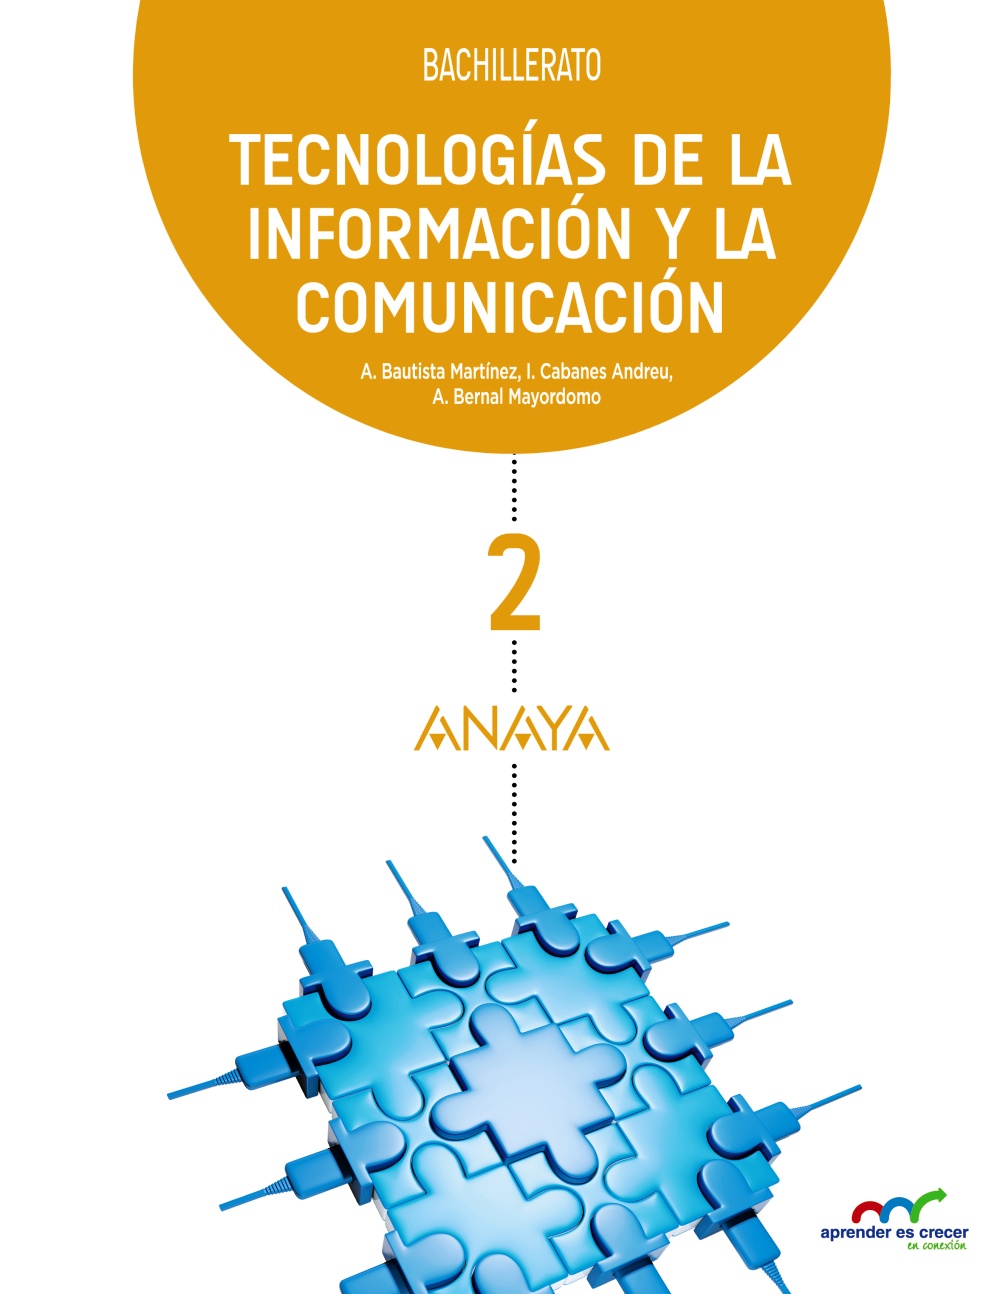 Solucionario Tecnologias de la informacion y la comunicación 2 Bachillerato Anaya Aprender es Crecer PDF Ejercicios Resueltos-pdf